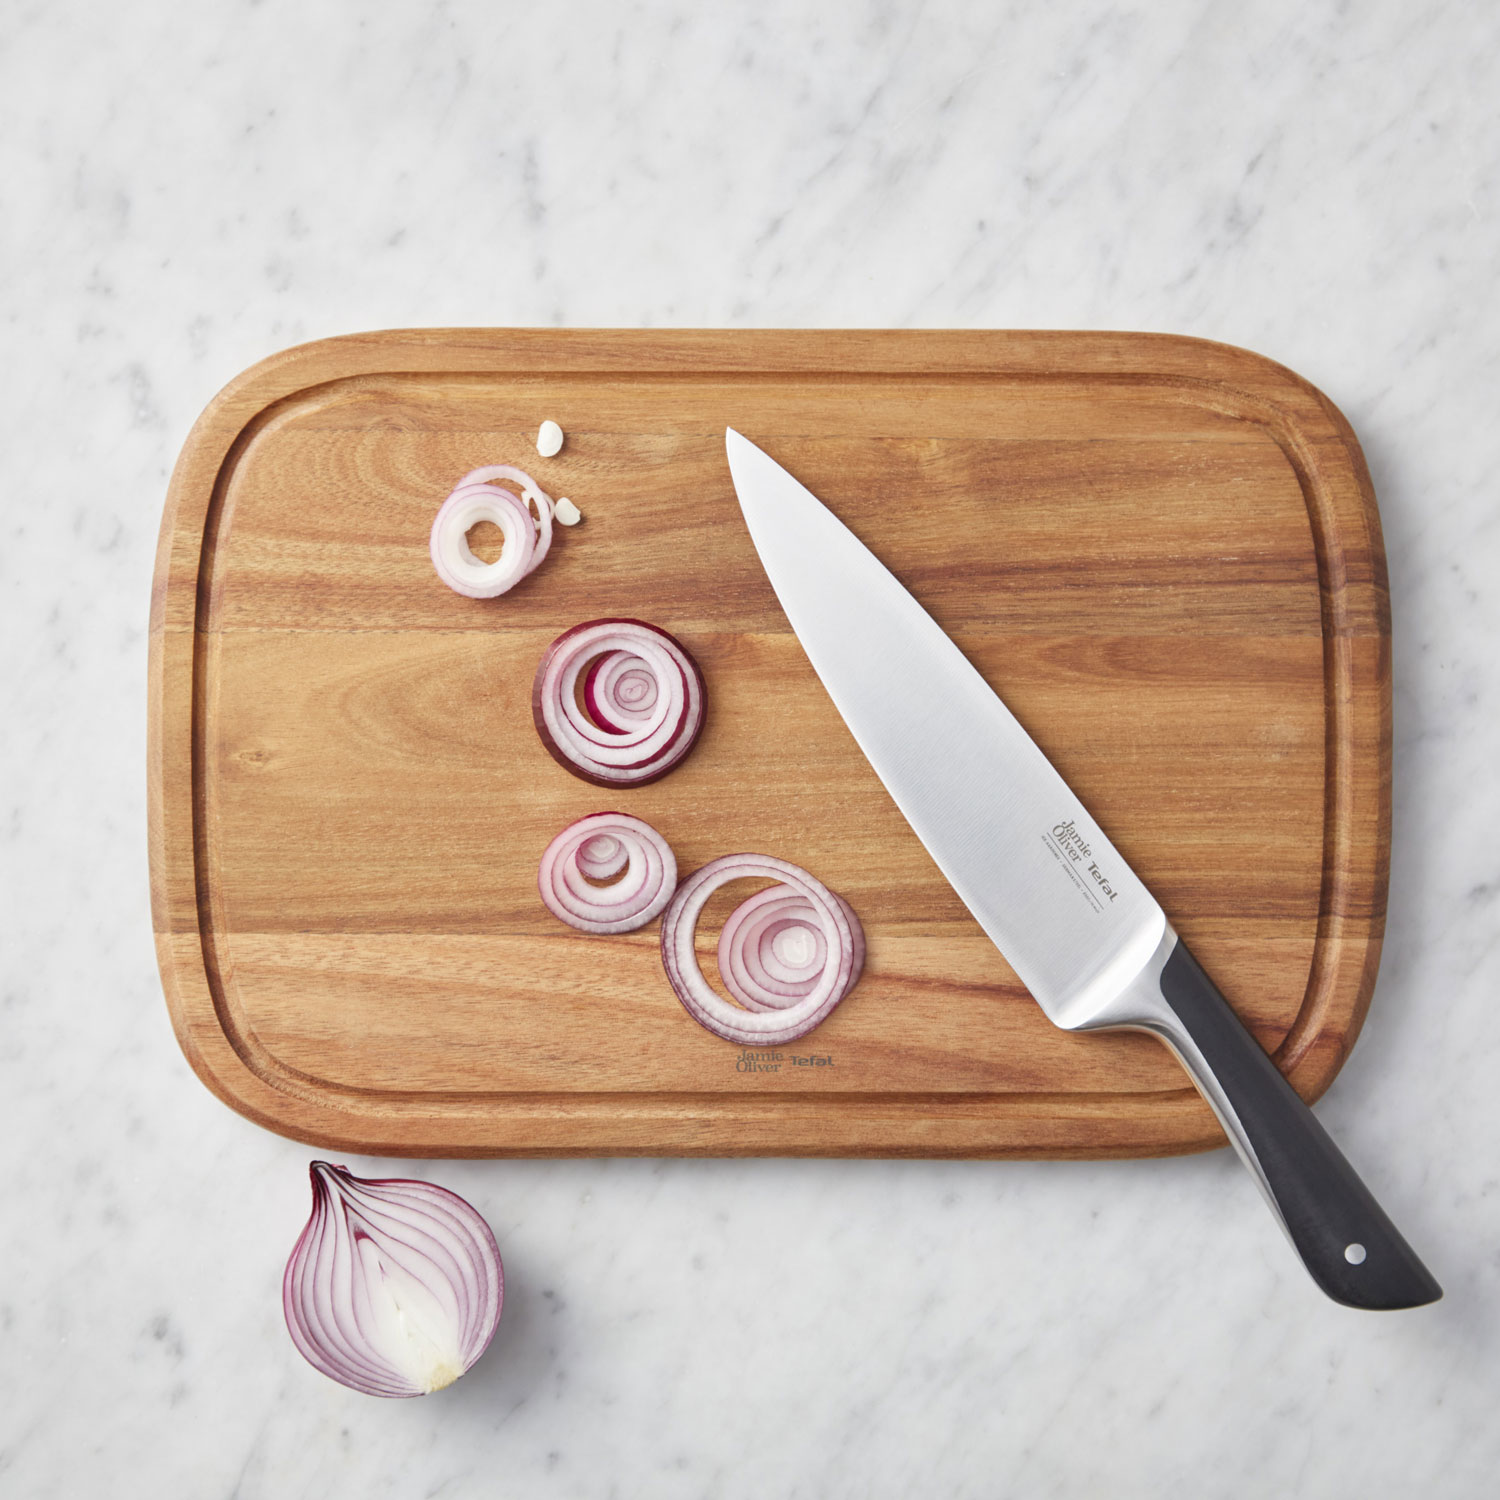 definitive Hong Kong Detektiv Jamie Oliver Chef Knife, 20 cm - Tefal @ RoyalDesign